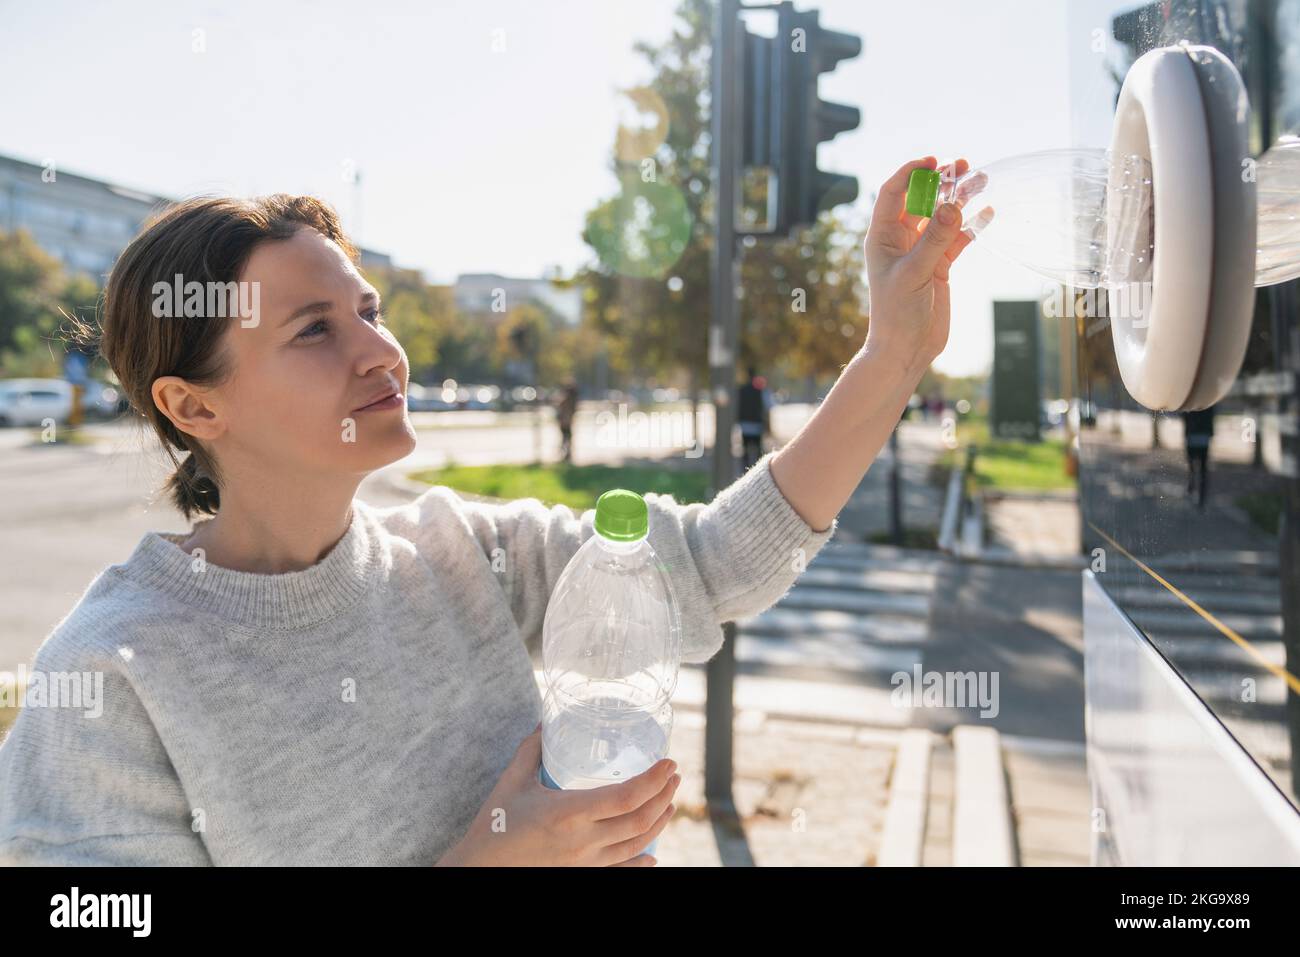 Une femme utilise une machine en libre-service pour recevoir des bouteilles et des canettes en plastique utilisées dans une rue urbaine Banque D'Images